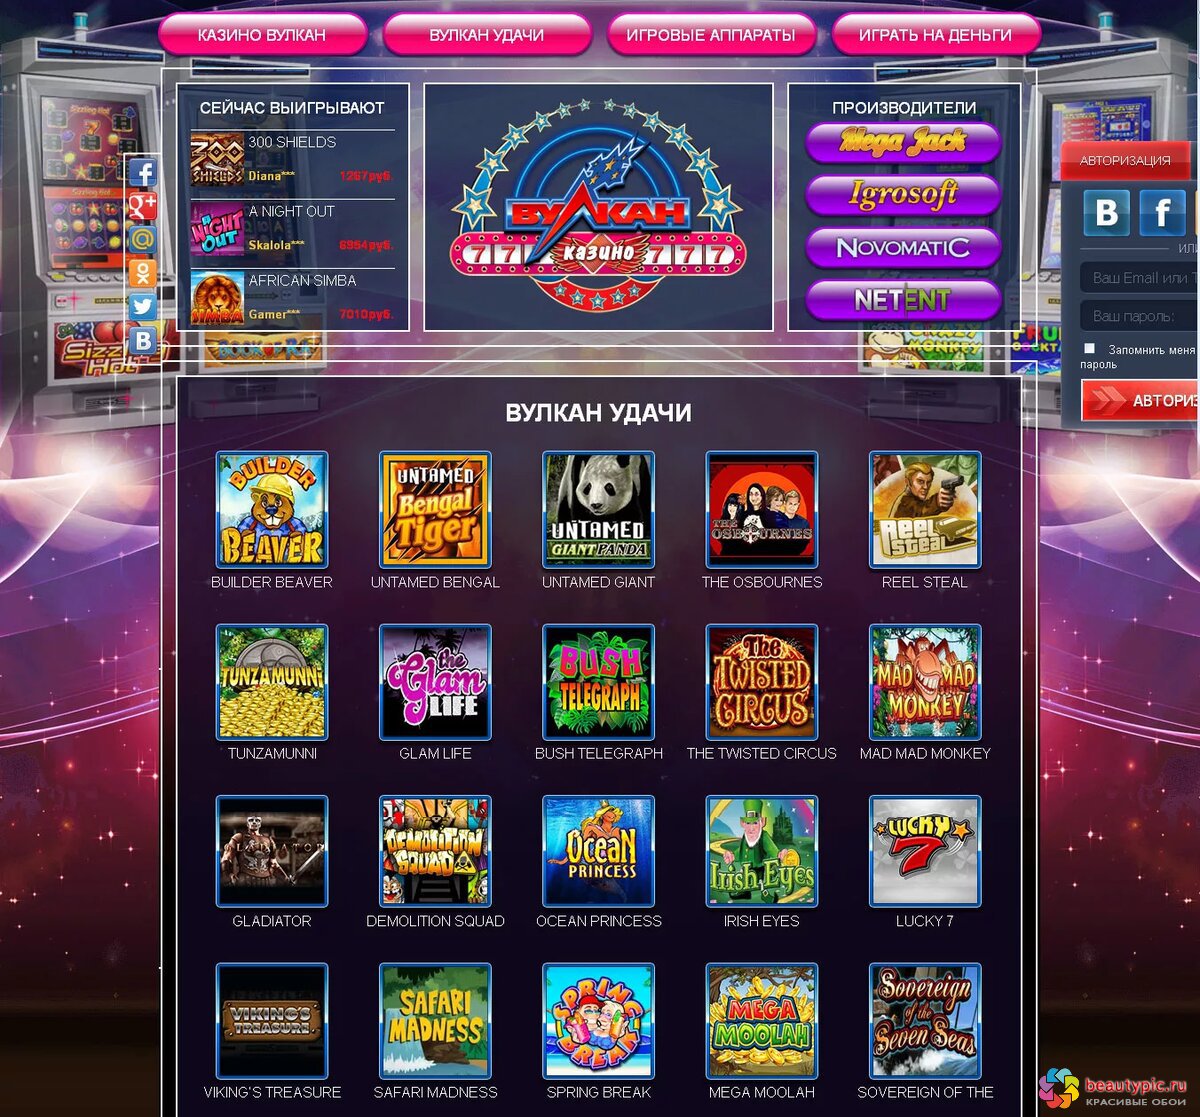 Вулкан игровые автоматы онлайн клуб вулкан казино играть steam tower игровой автомат